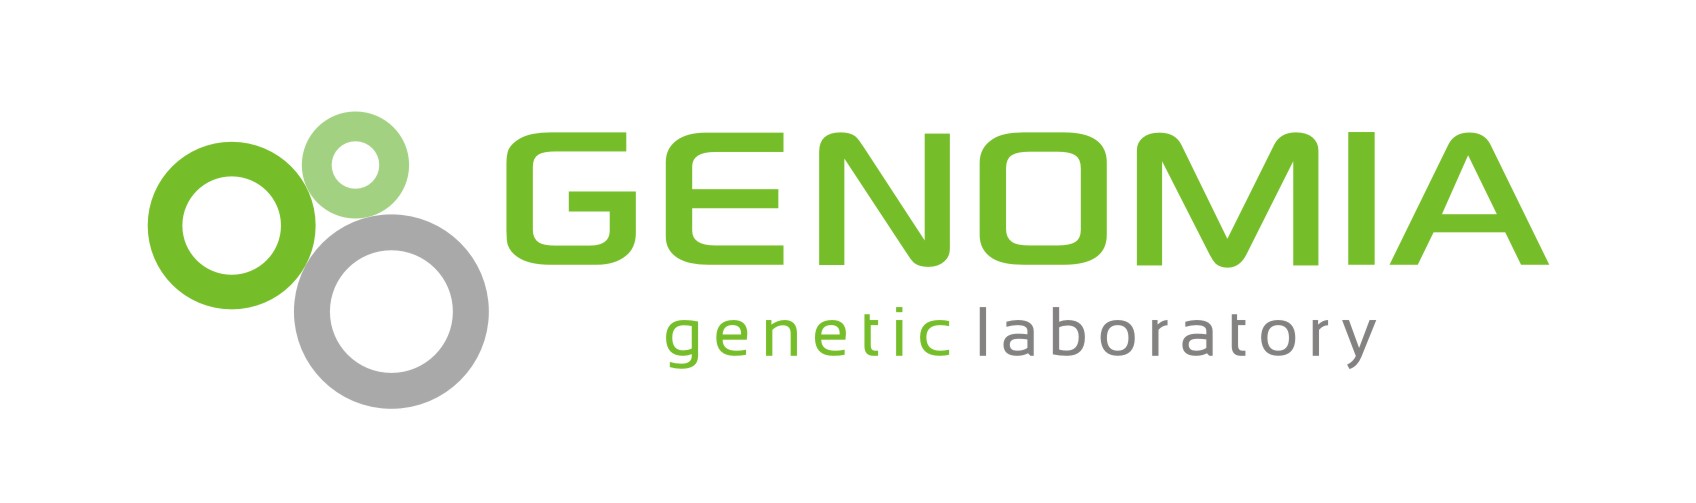 Registrace klubu Genomia